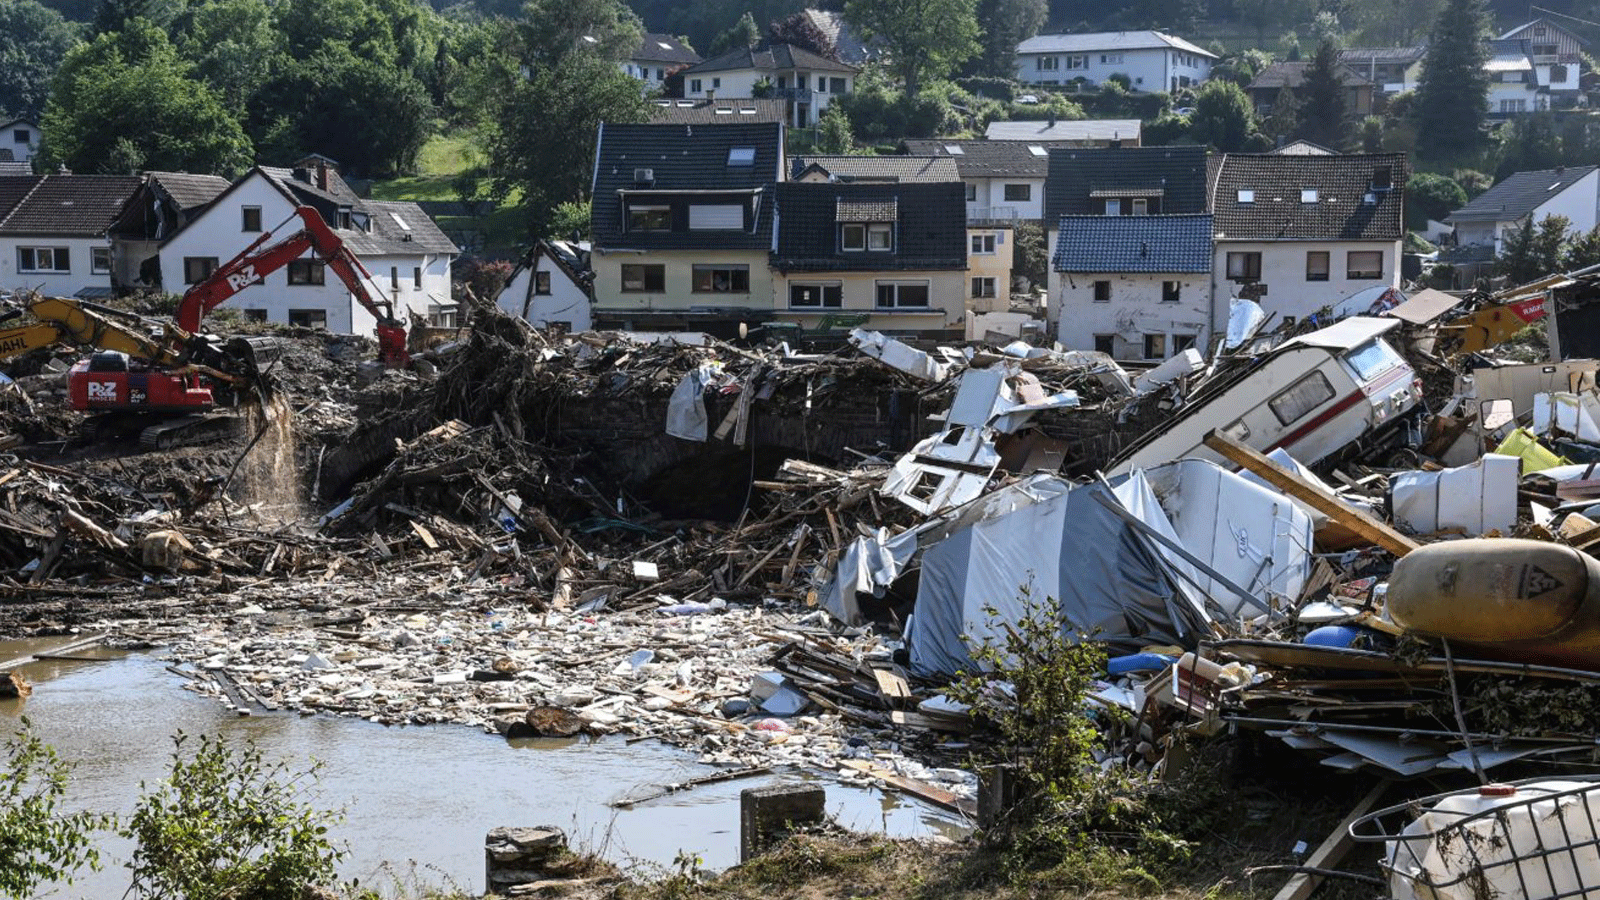 تشهد بلجيكا وألمانيا أكوامًا من النفايات، بما في ذلك الغسالات والأجهزة الأخرى المدمرة، في أعقاب الفيضانات الكارثية